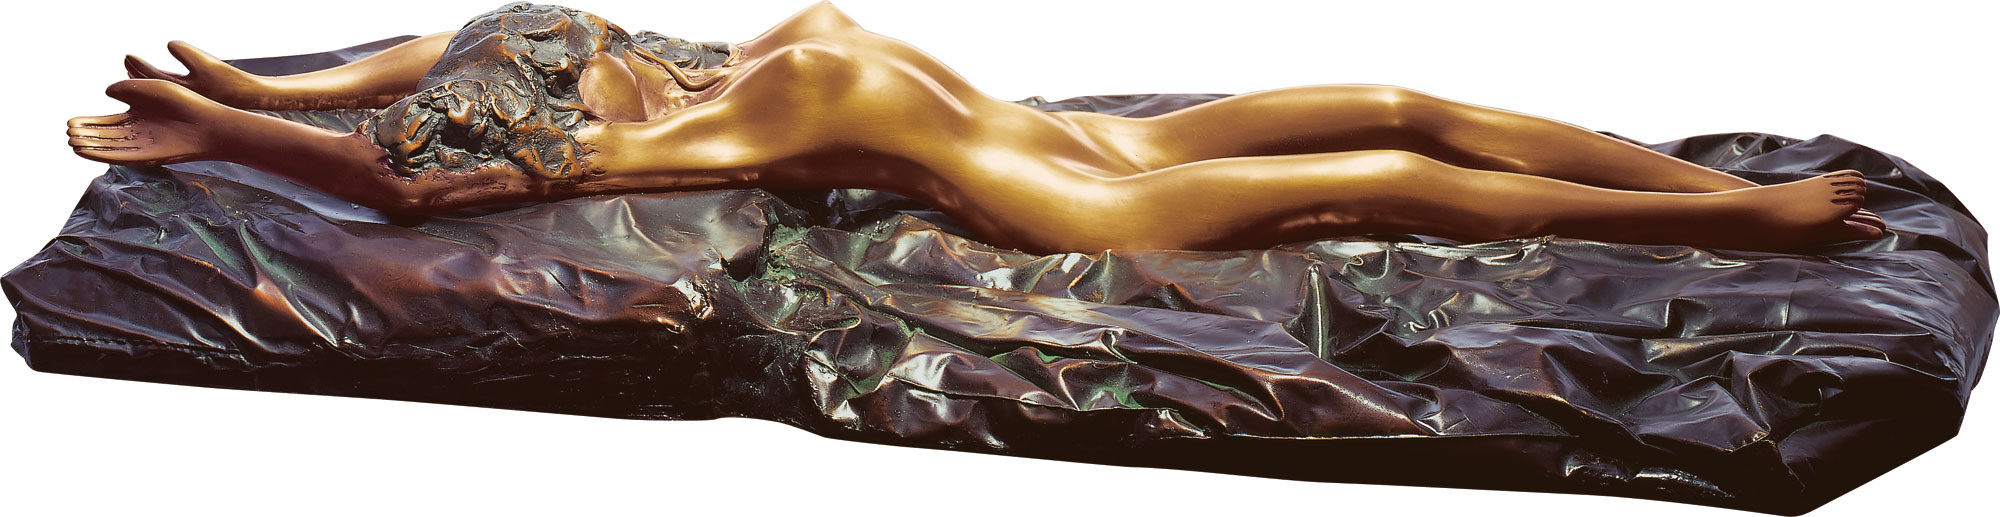 Skulptur "La Riposata", Bronze von Bruno Bruni